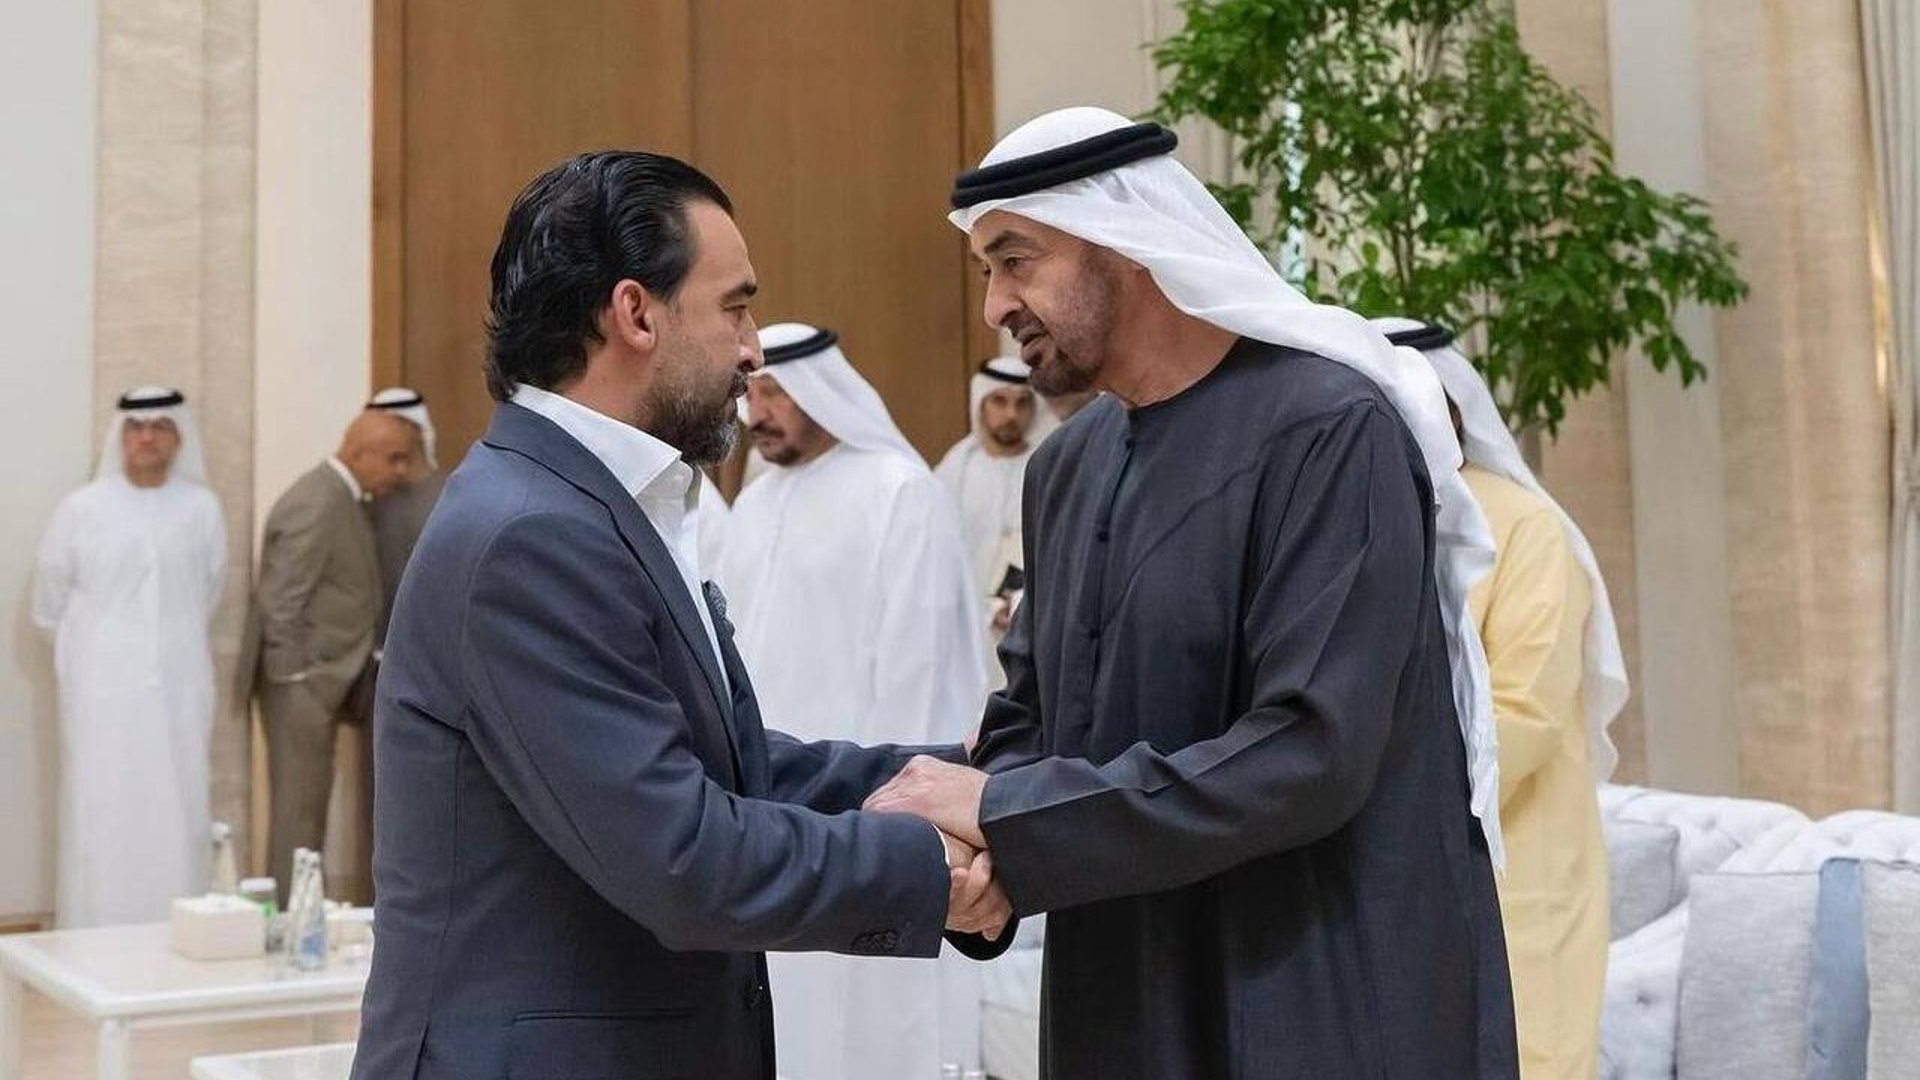 الحلبوسي يعزي رئيس الإمارات بوفاة طحنون آل نهيان (صور)